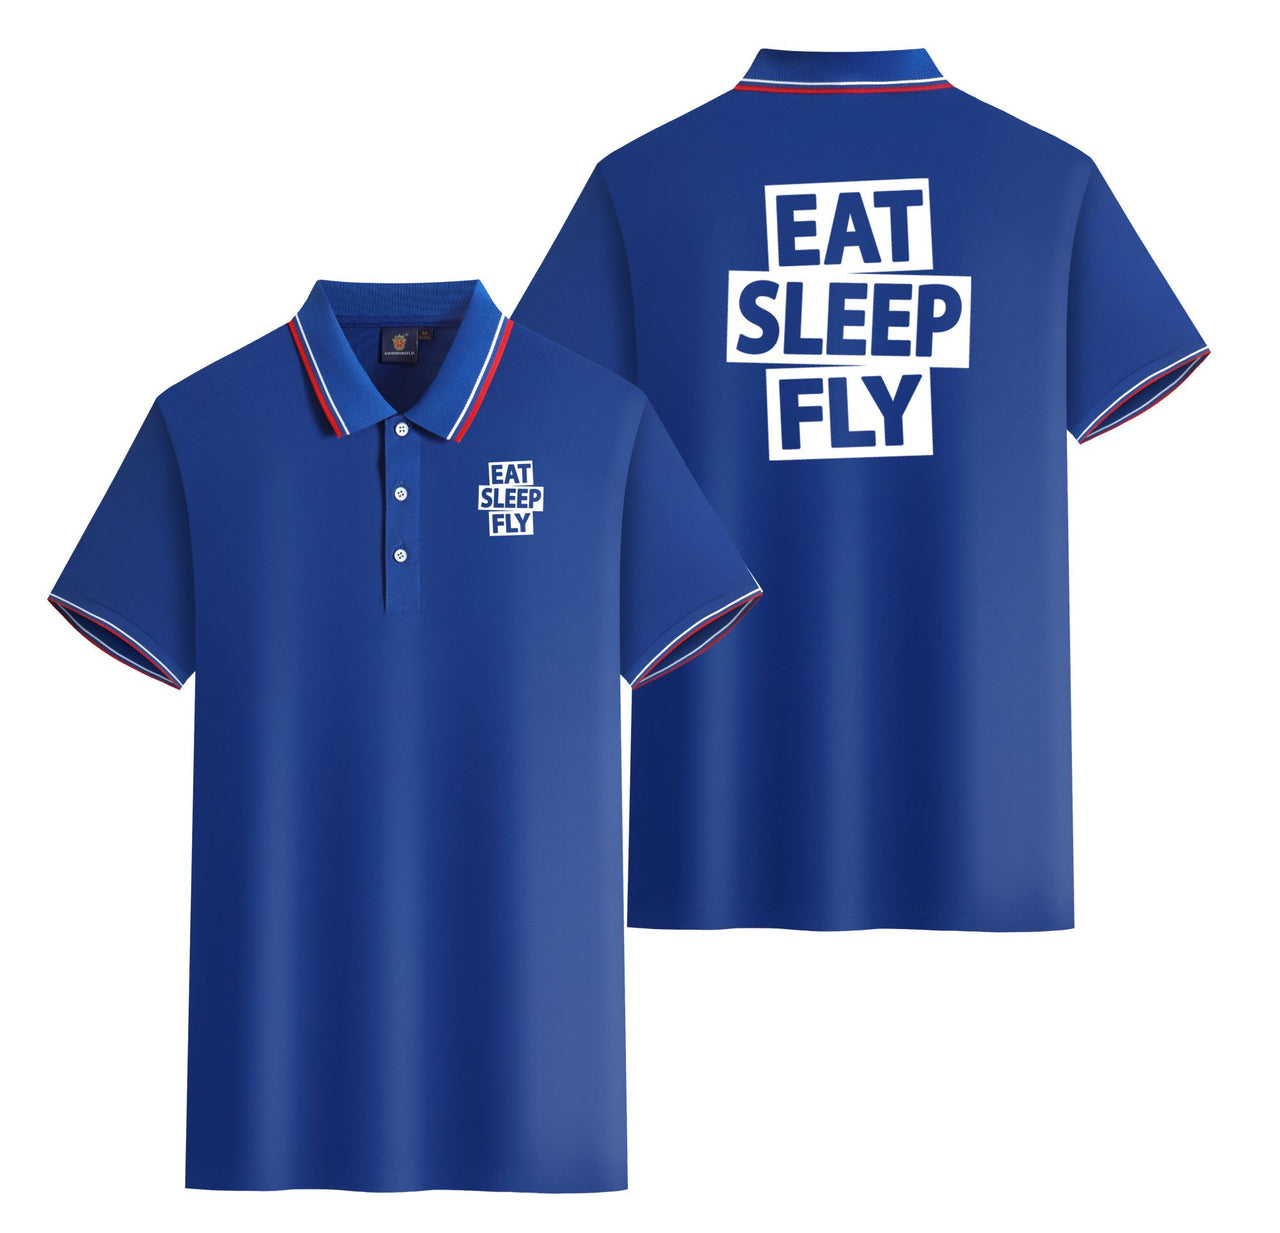 Eat Sleep Fly Designed Stylish Polo T-Shirts (Double-Side)